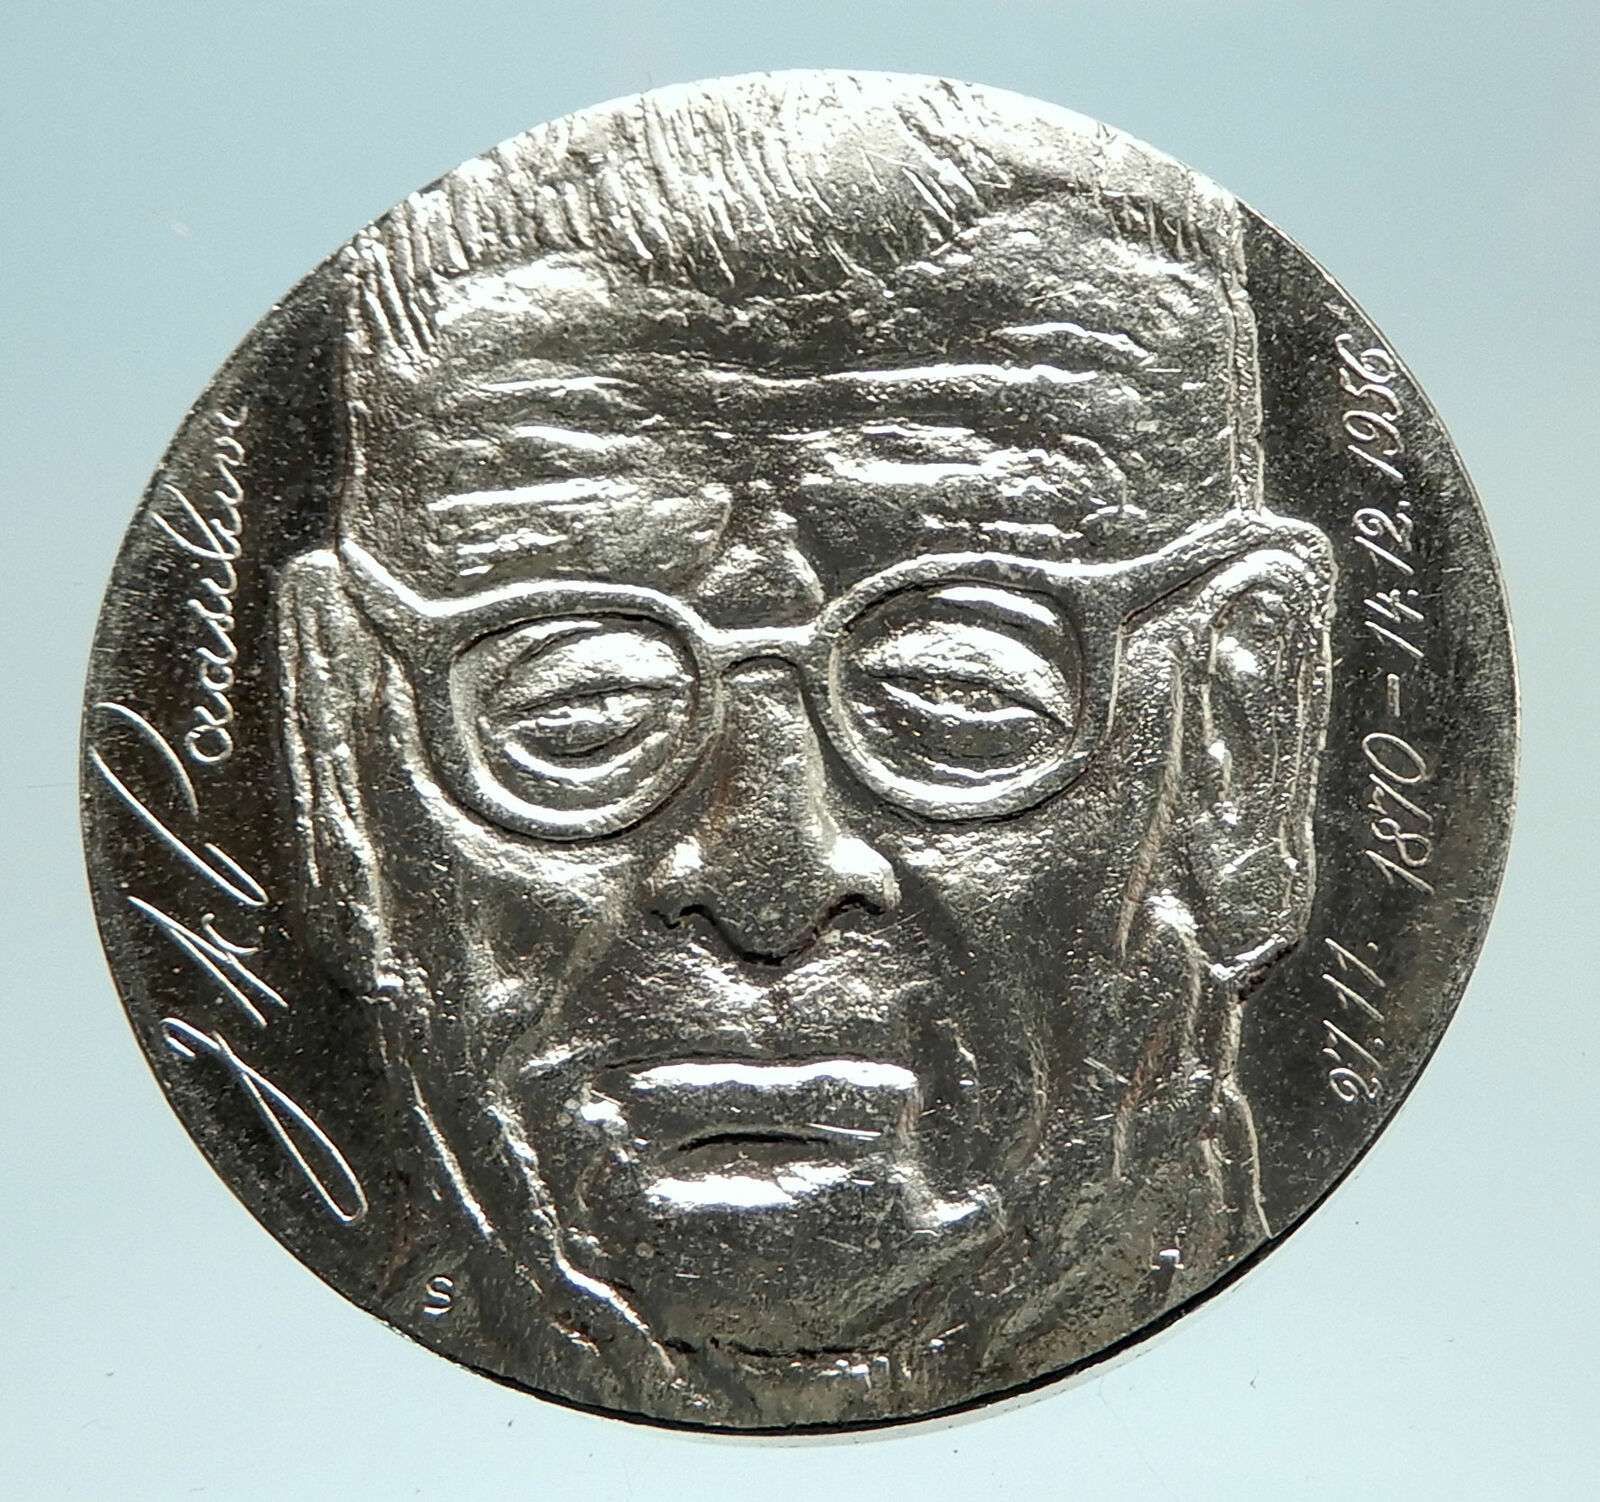 1970 FINLAND President Paasikivi Genuine Silver 10 Markkaa Finnish Coin i76755